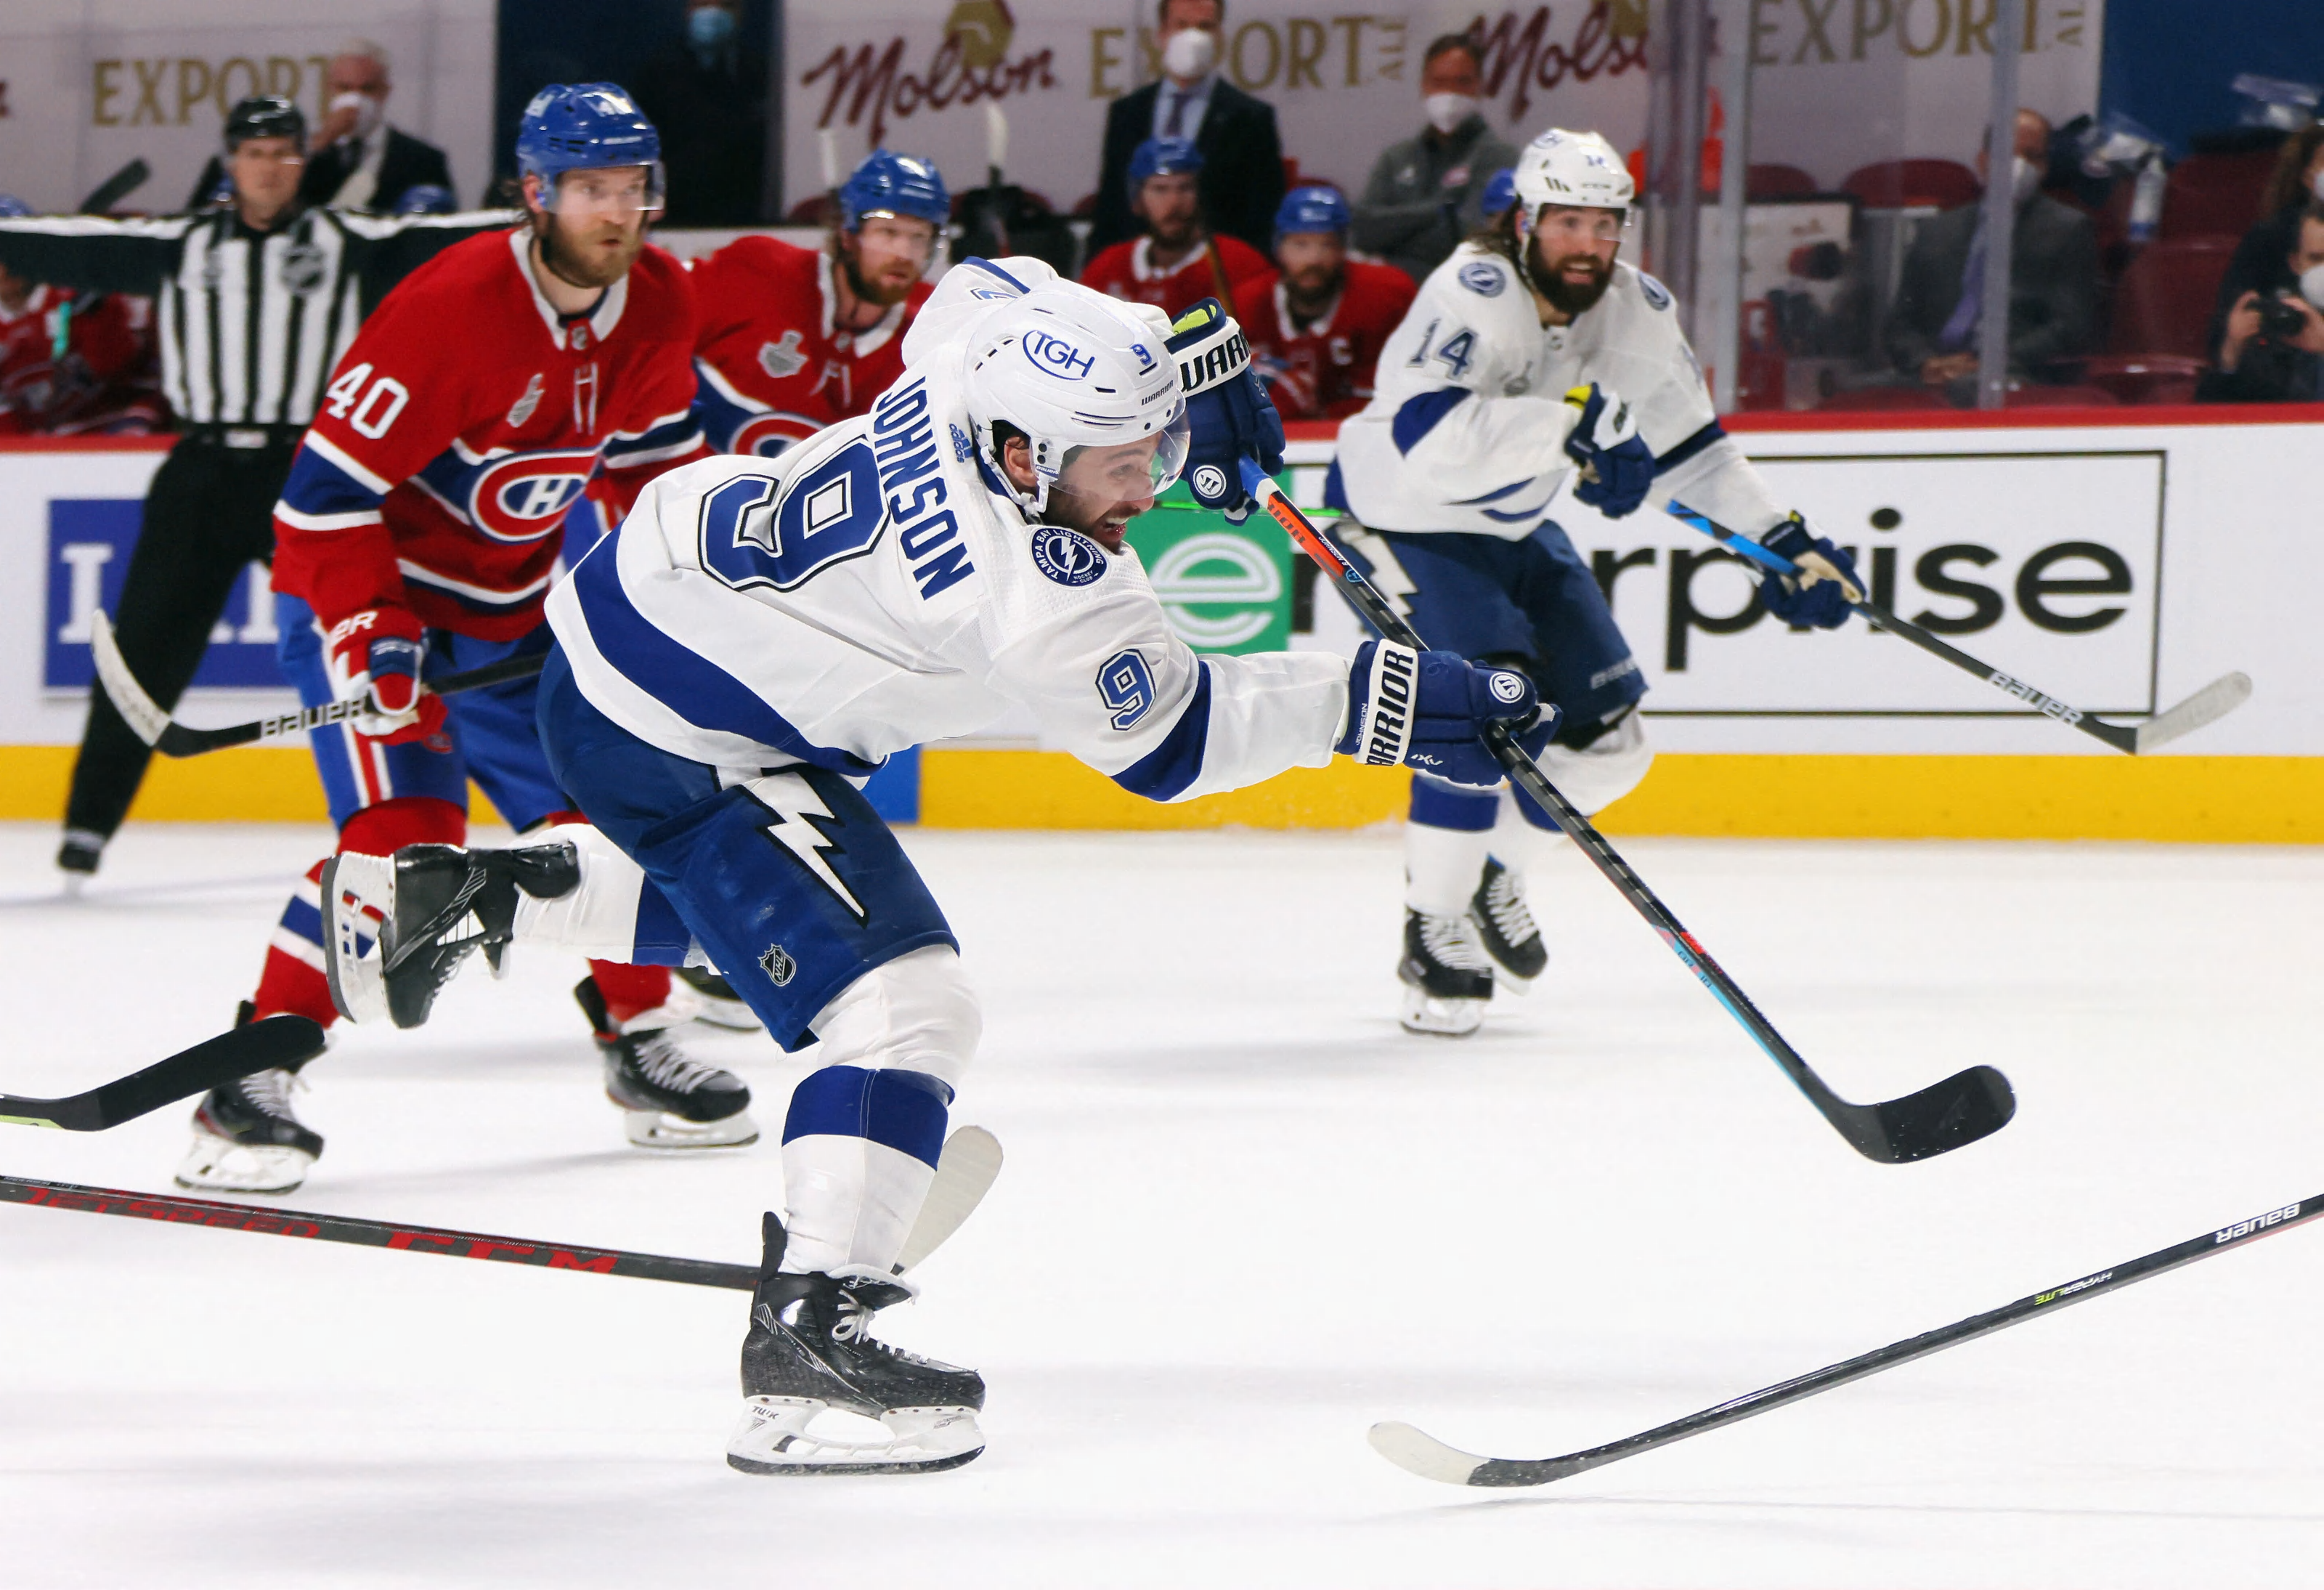 Bruins-Canadiens: 3 takeaways from the regular season finale